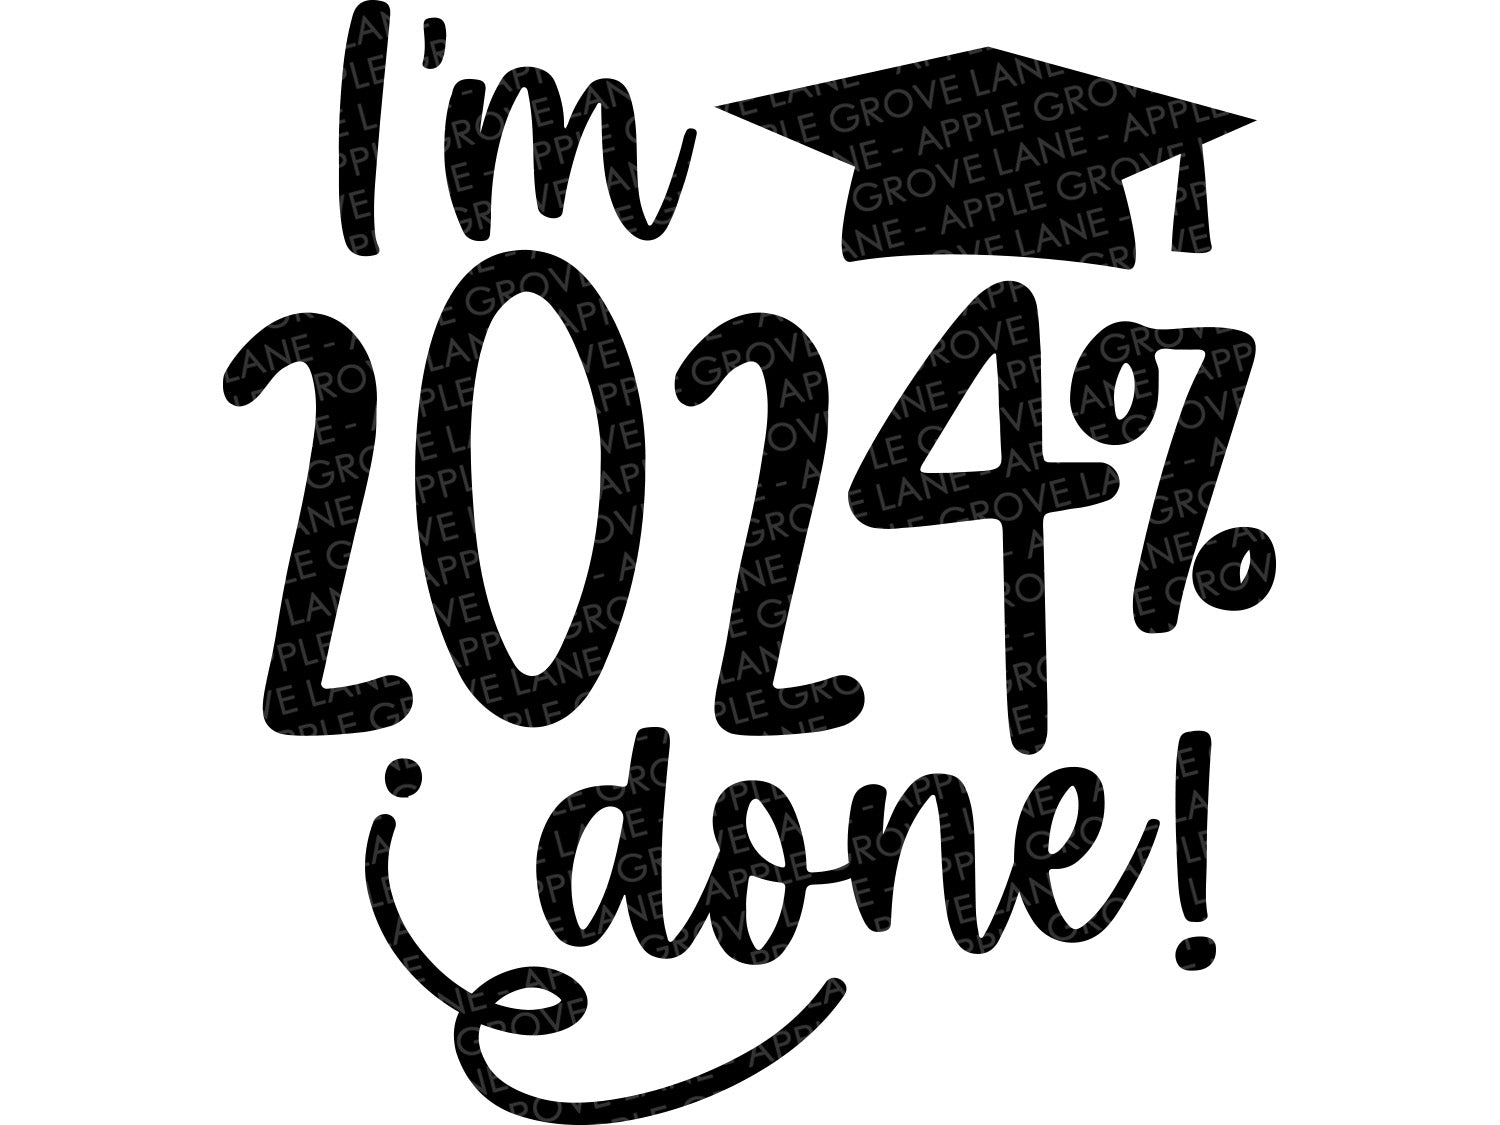 Class of 2024 Svg - 2024% Done Svg - Graduation SVG - 2024 Svg - I'm Done - 2024 Senior - Graduation 2024 Svg - Class 2024 - I'm 2024 done